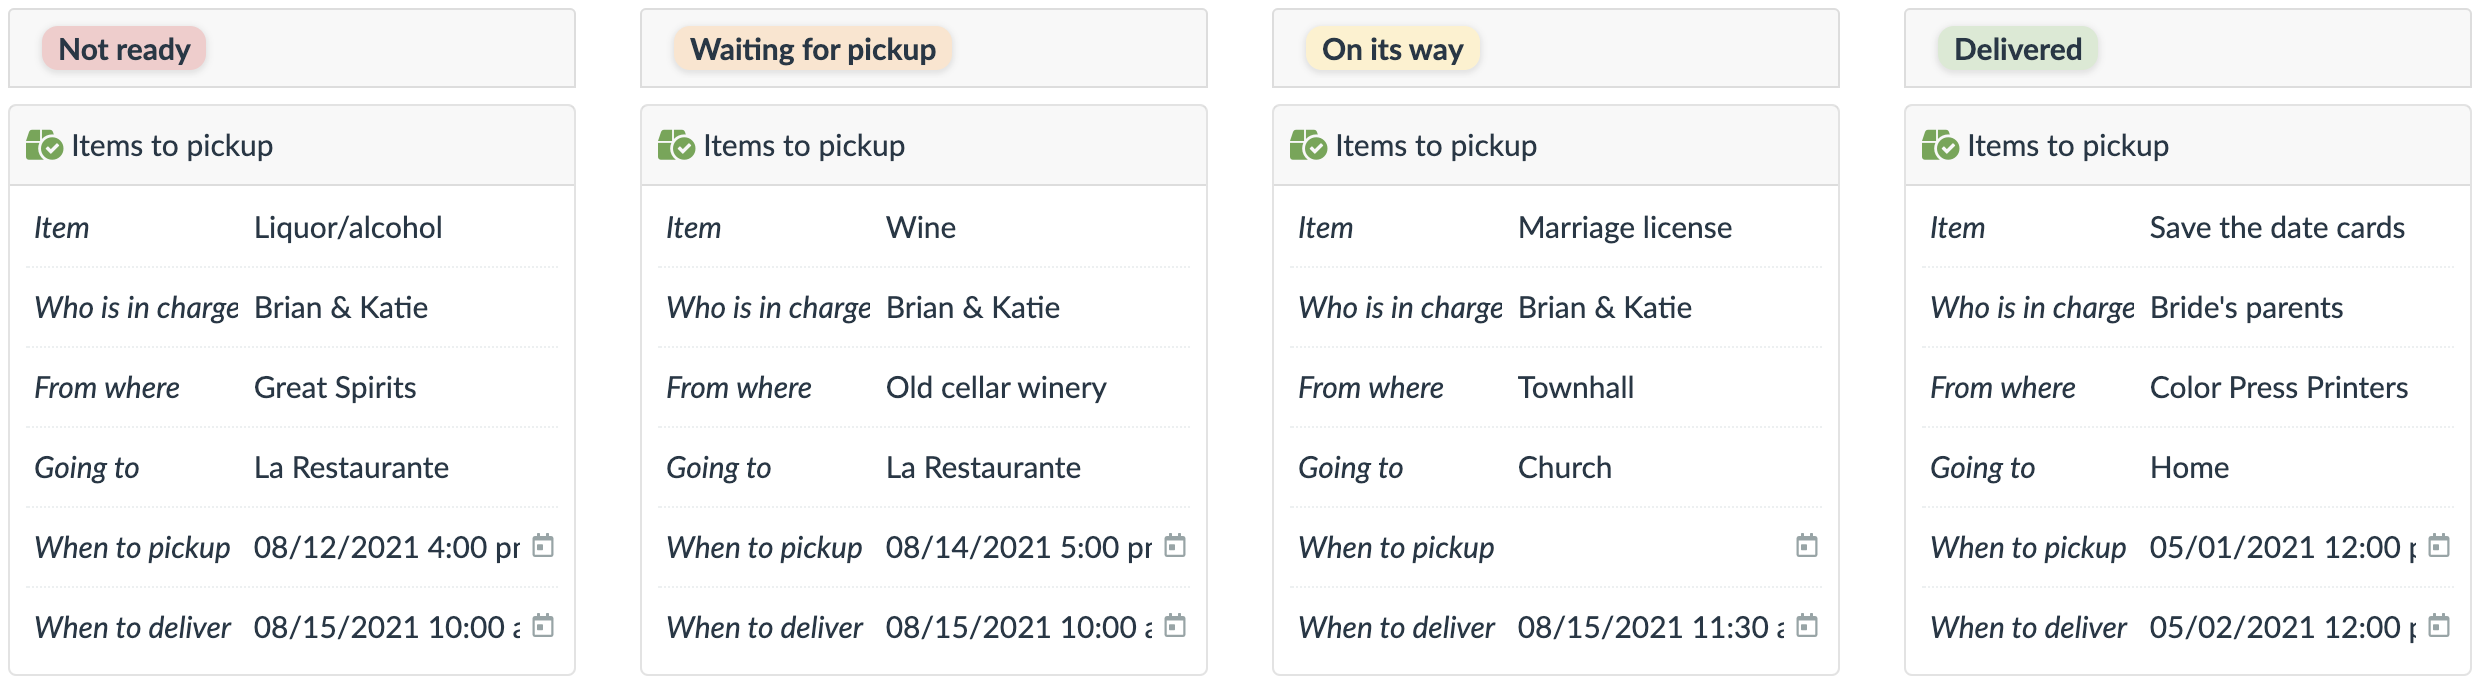 items to pickup, deliver, arrange